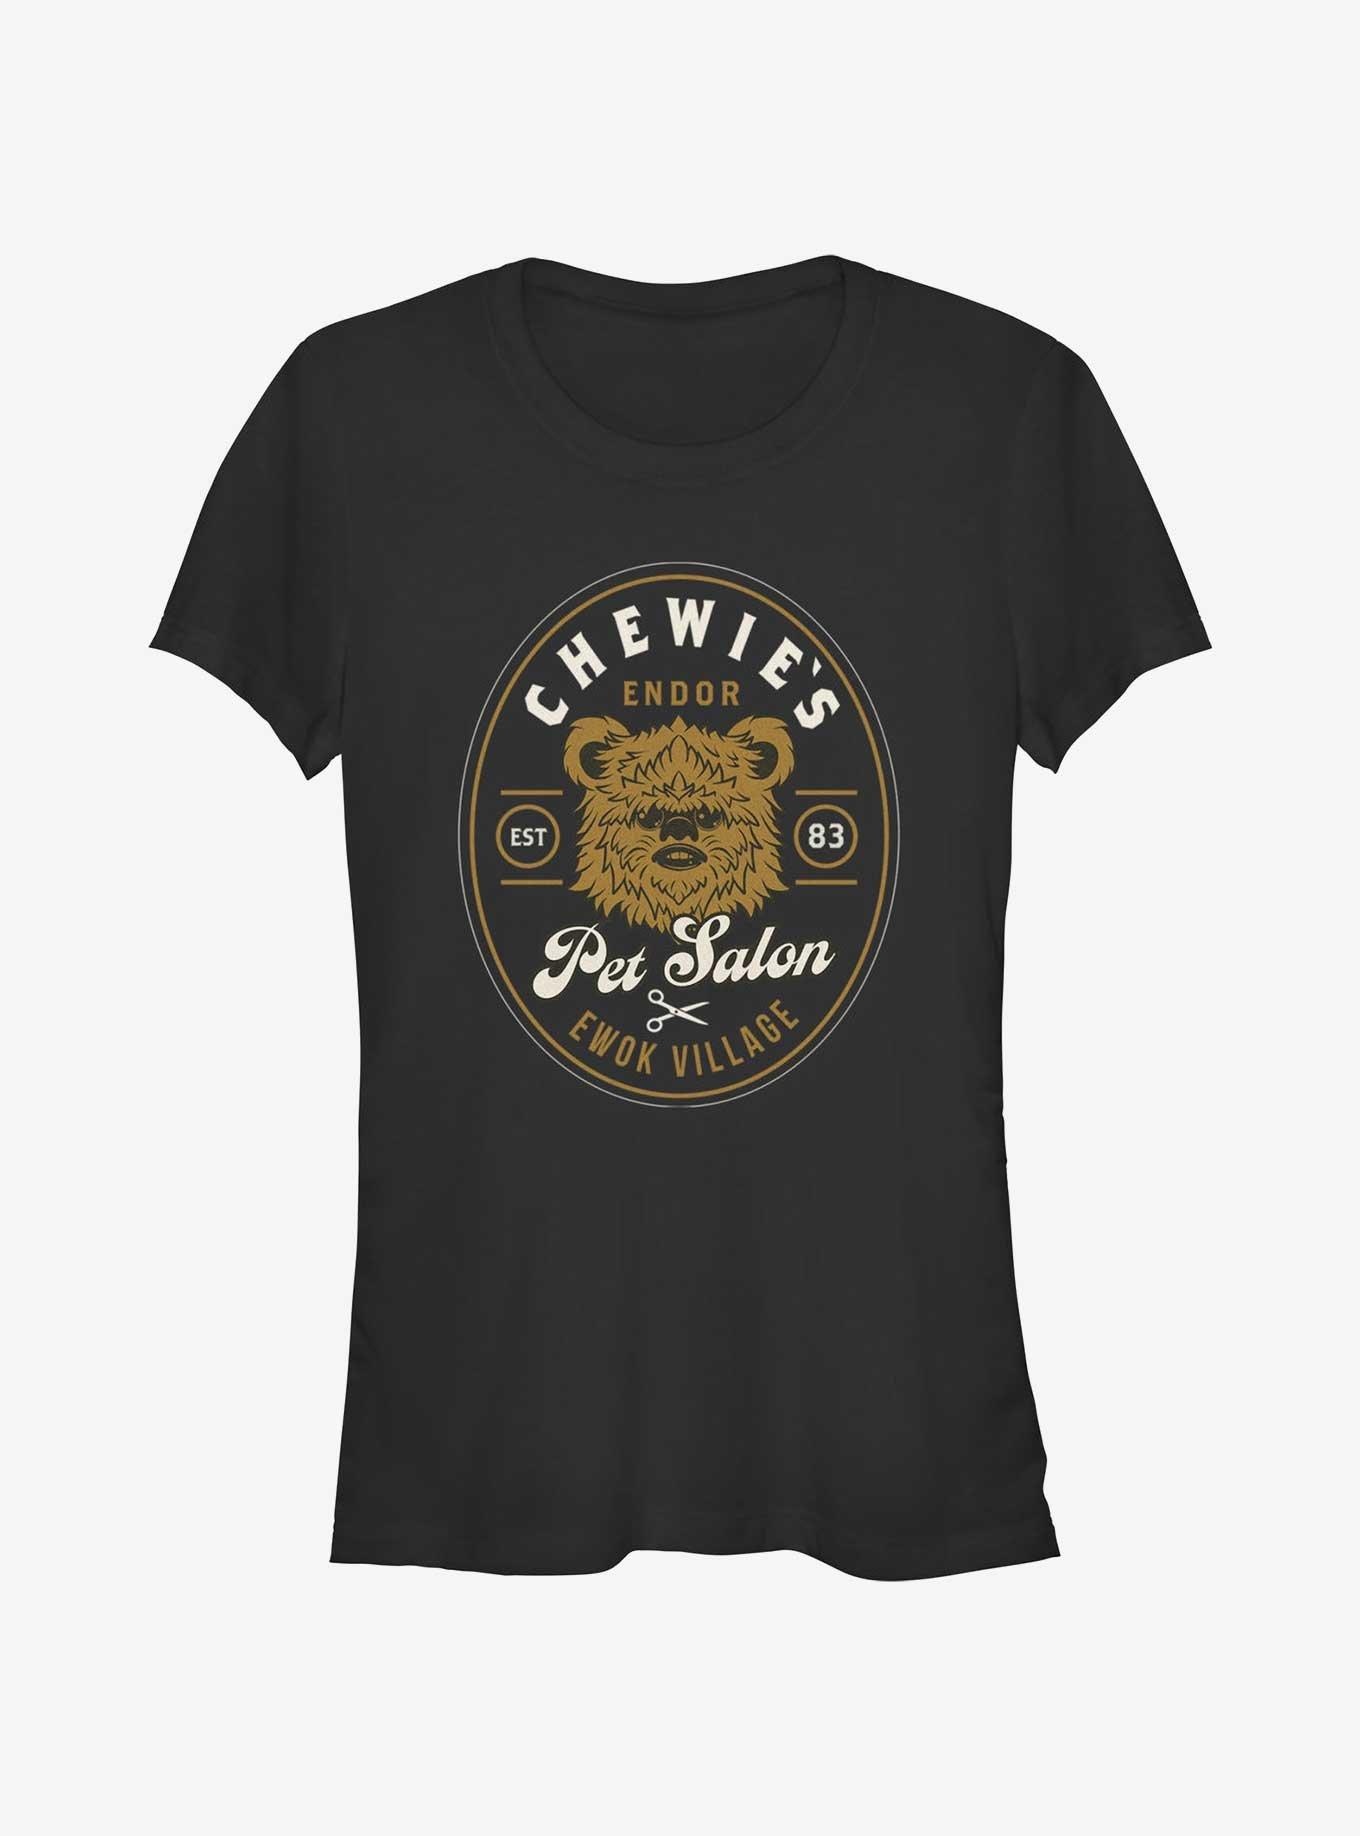 Star Wars Chewie's Pet Salon Ewok Village Girls T-Shirt, BLACK, hi-res